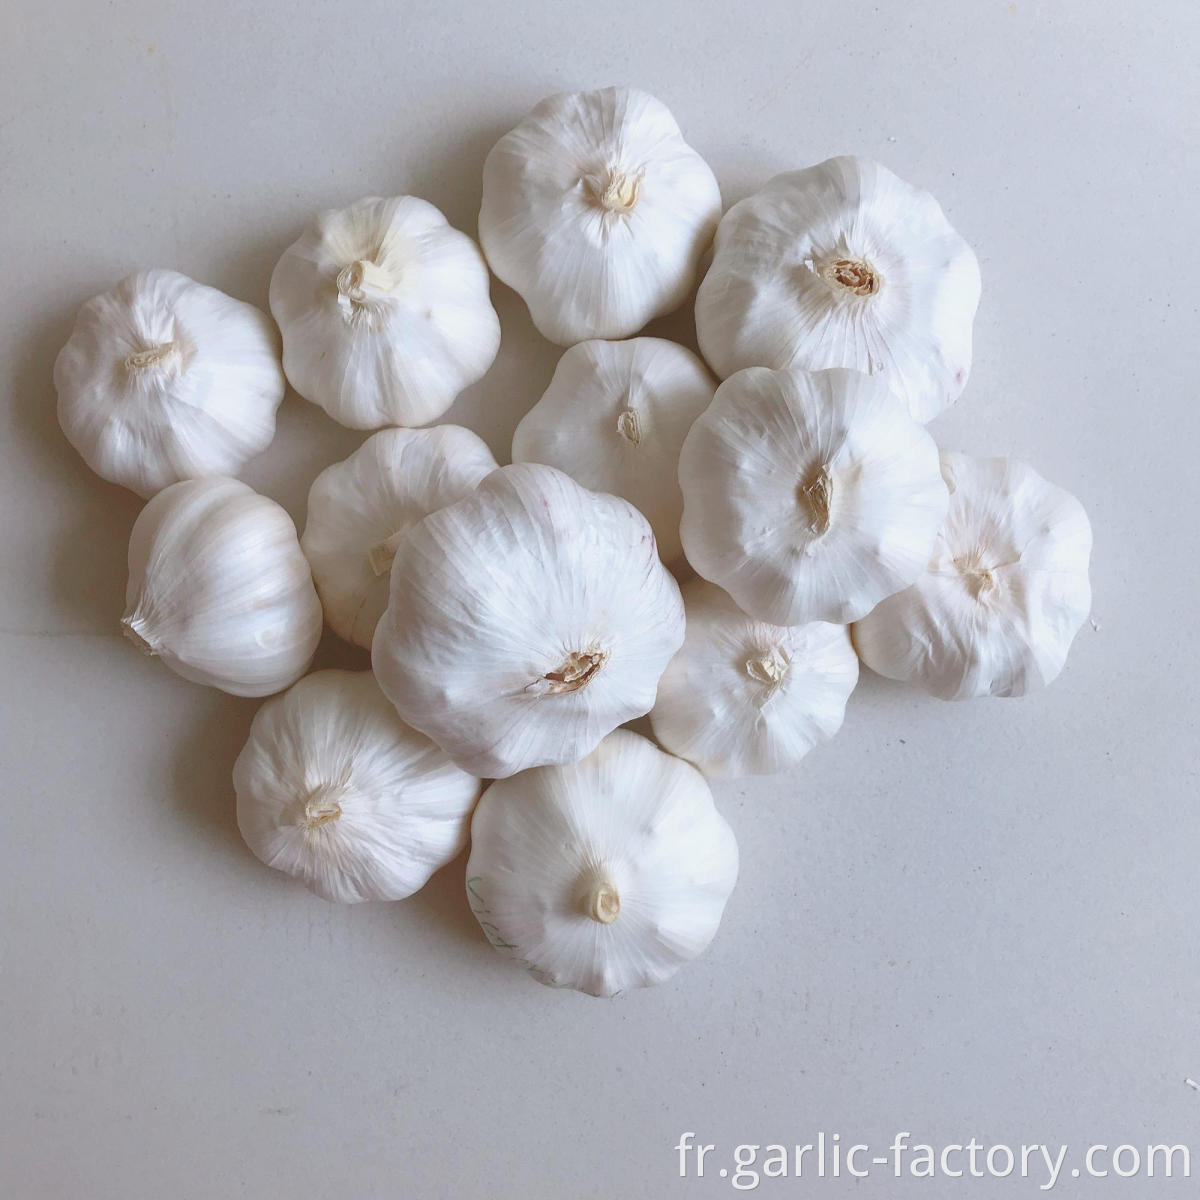 New Crop Fresh Garlic Market Price 1KG